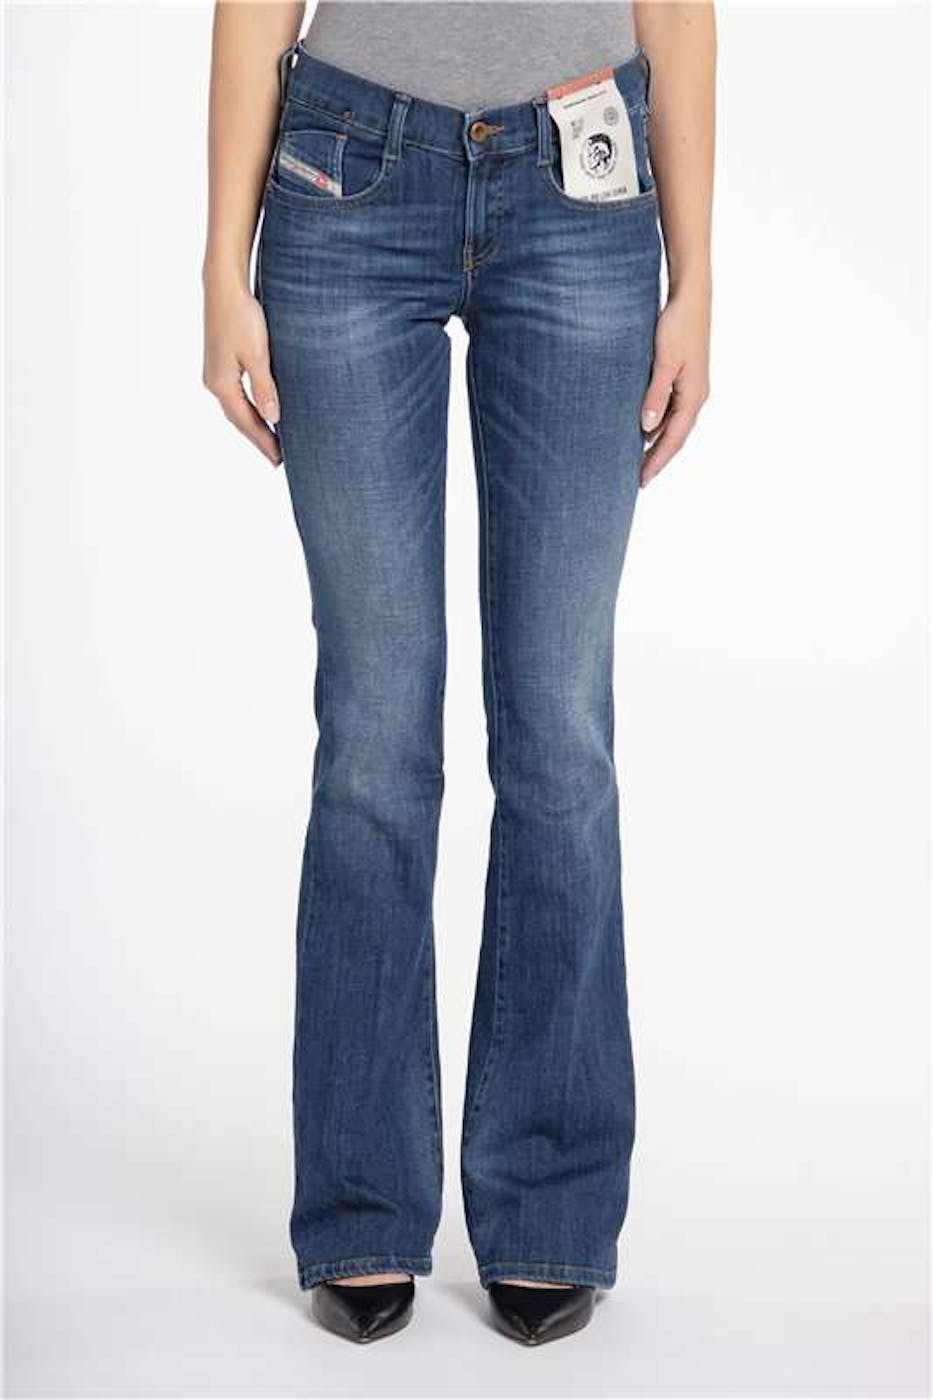 Diesel - Blauwe Ebby flared jeans